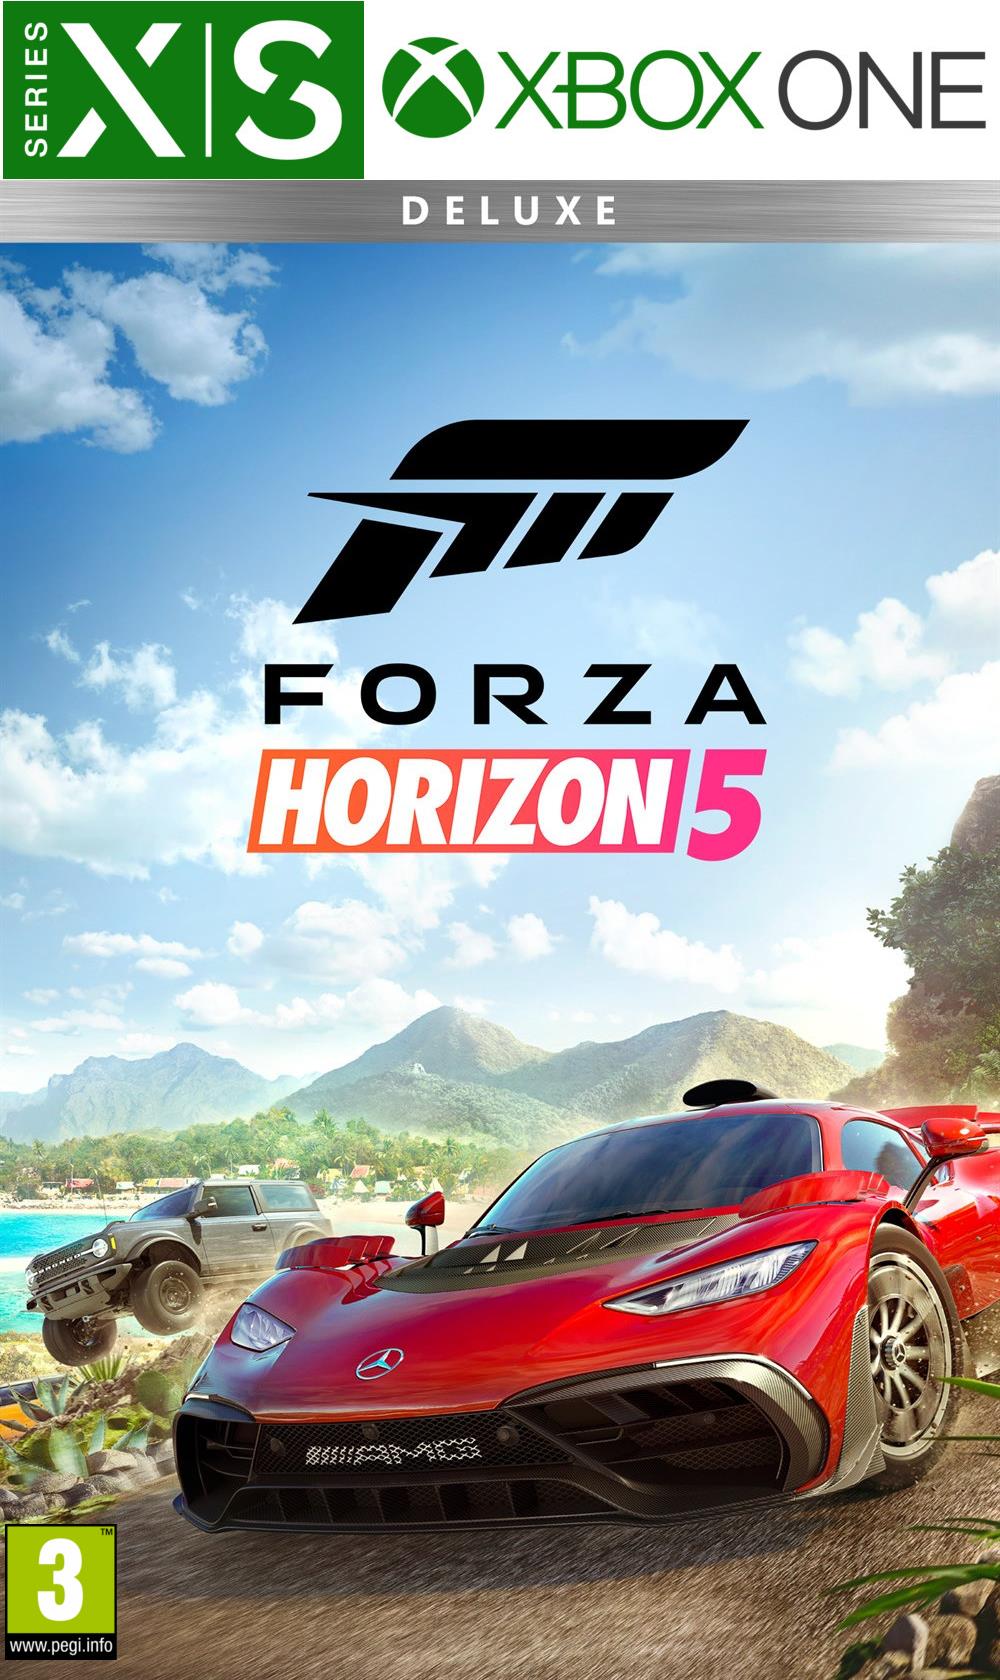 Microsoft Forza Horizon 5 Deluxe Edition XBox / PC Digital Code DE (G7Q-00127)